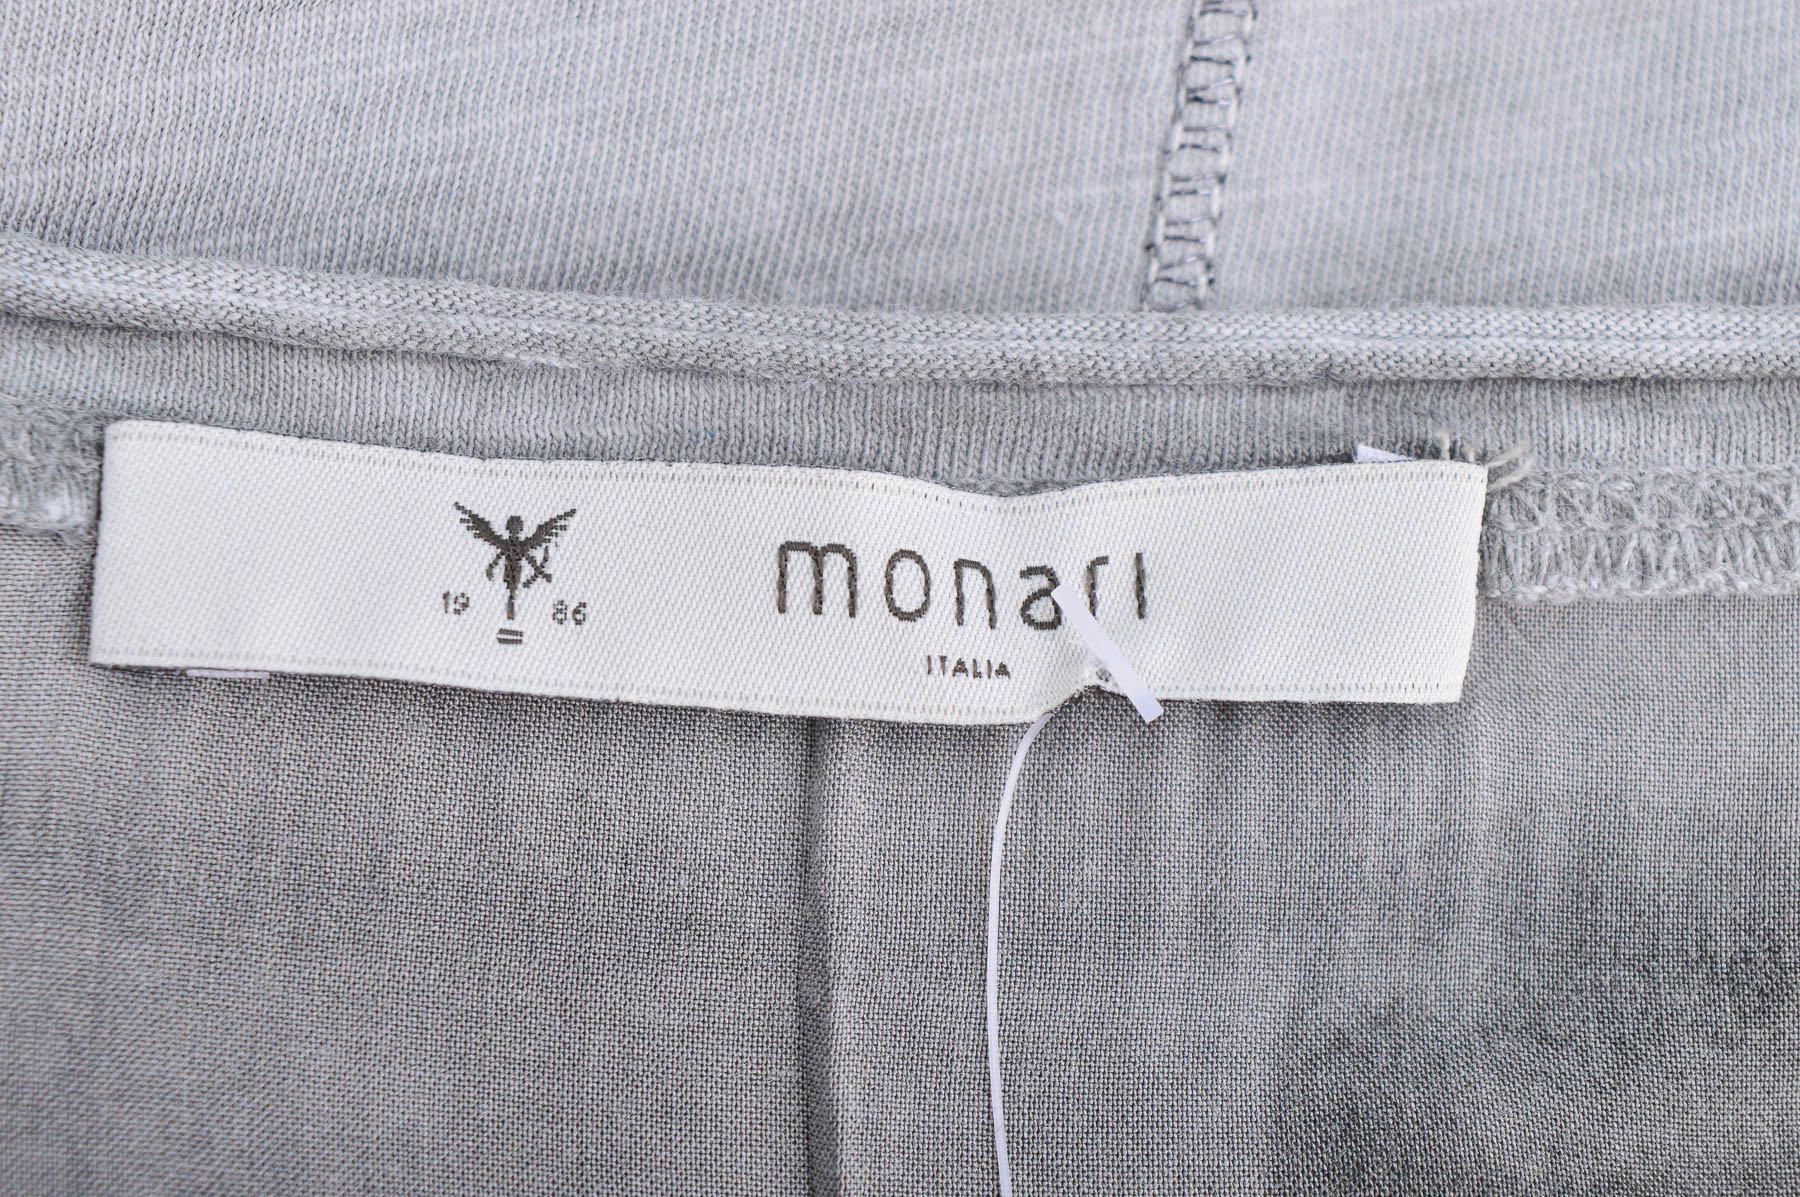 Γυναικεία μπλούζα - Monari - 2